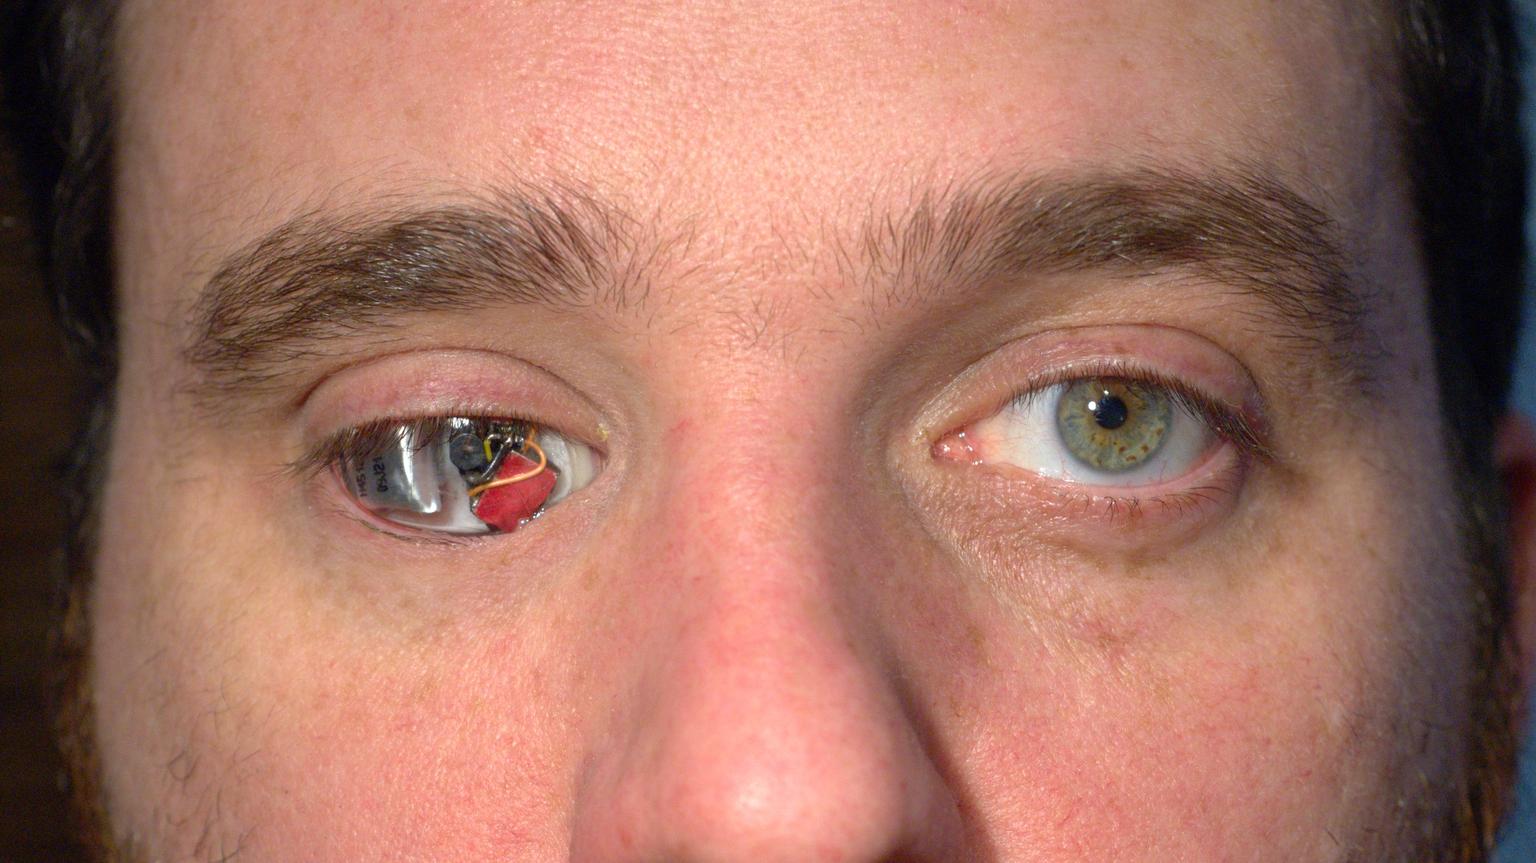 siliconul din ochi afectează vederea